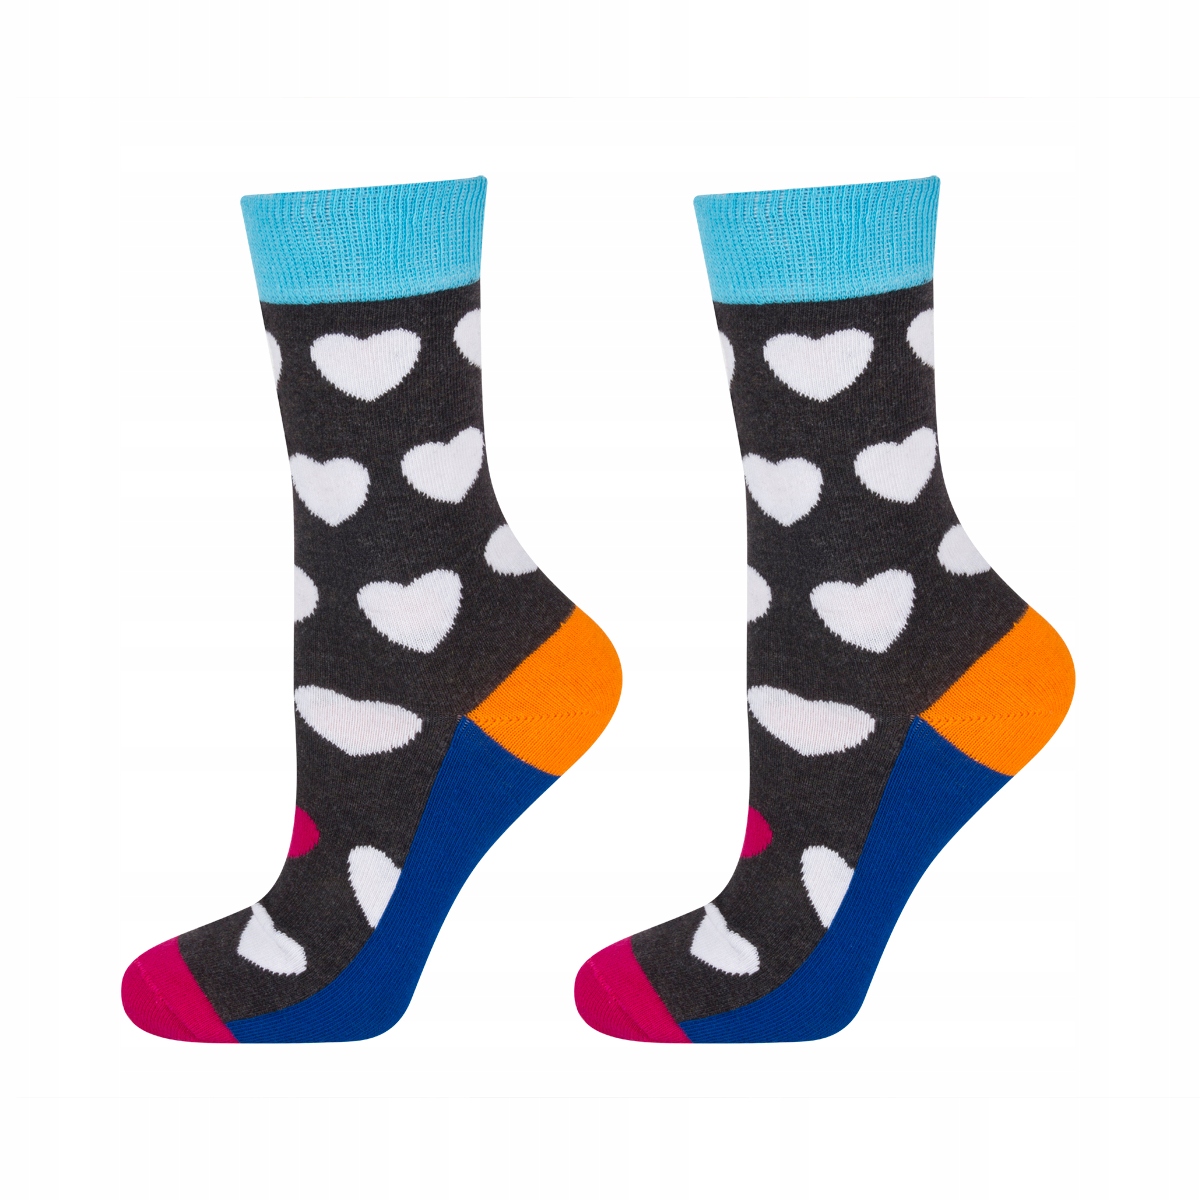 € SOXO GOOD STUFF 5,99 Online-Shop | Herzen mit SOXO - Socken Kinder